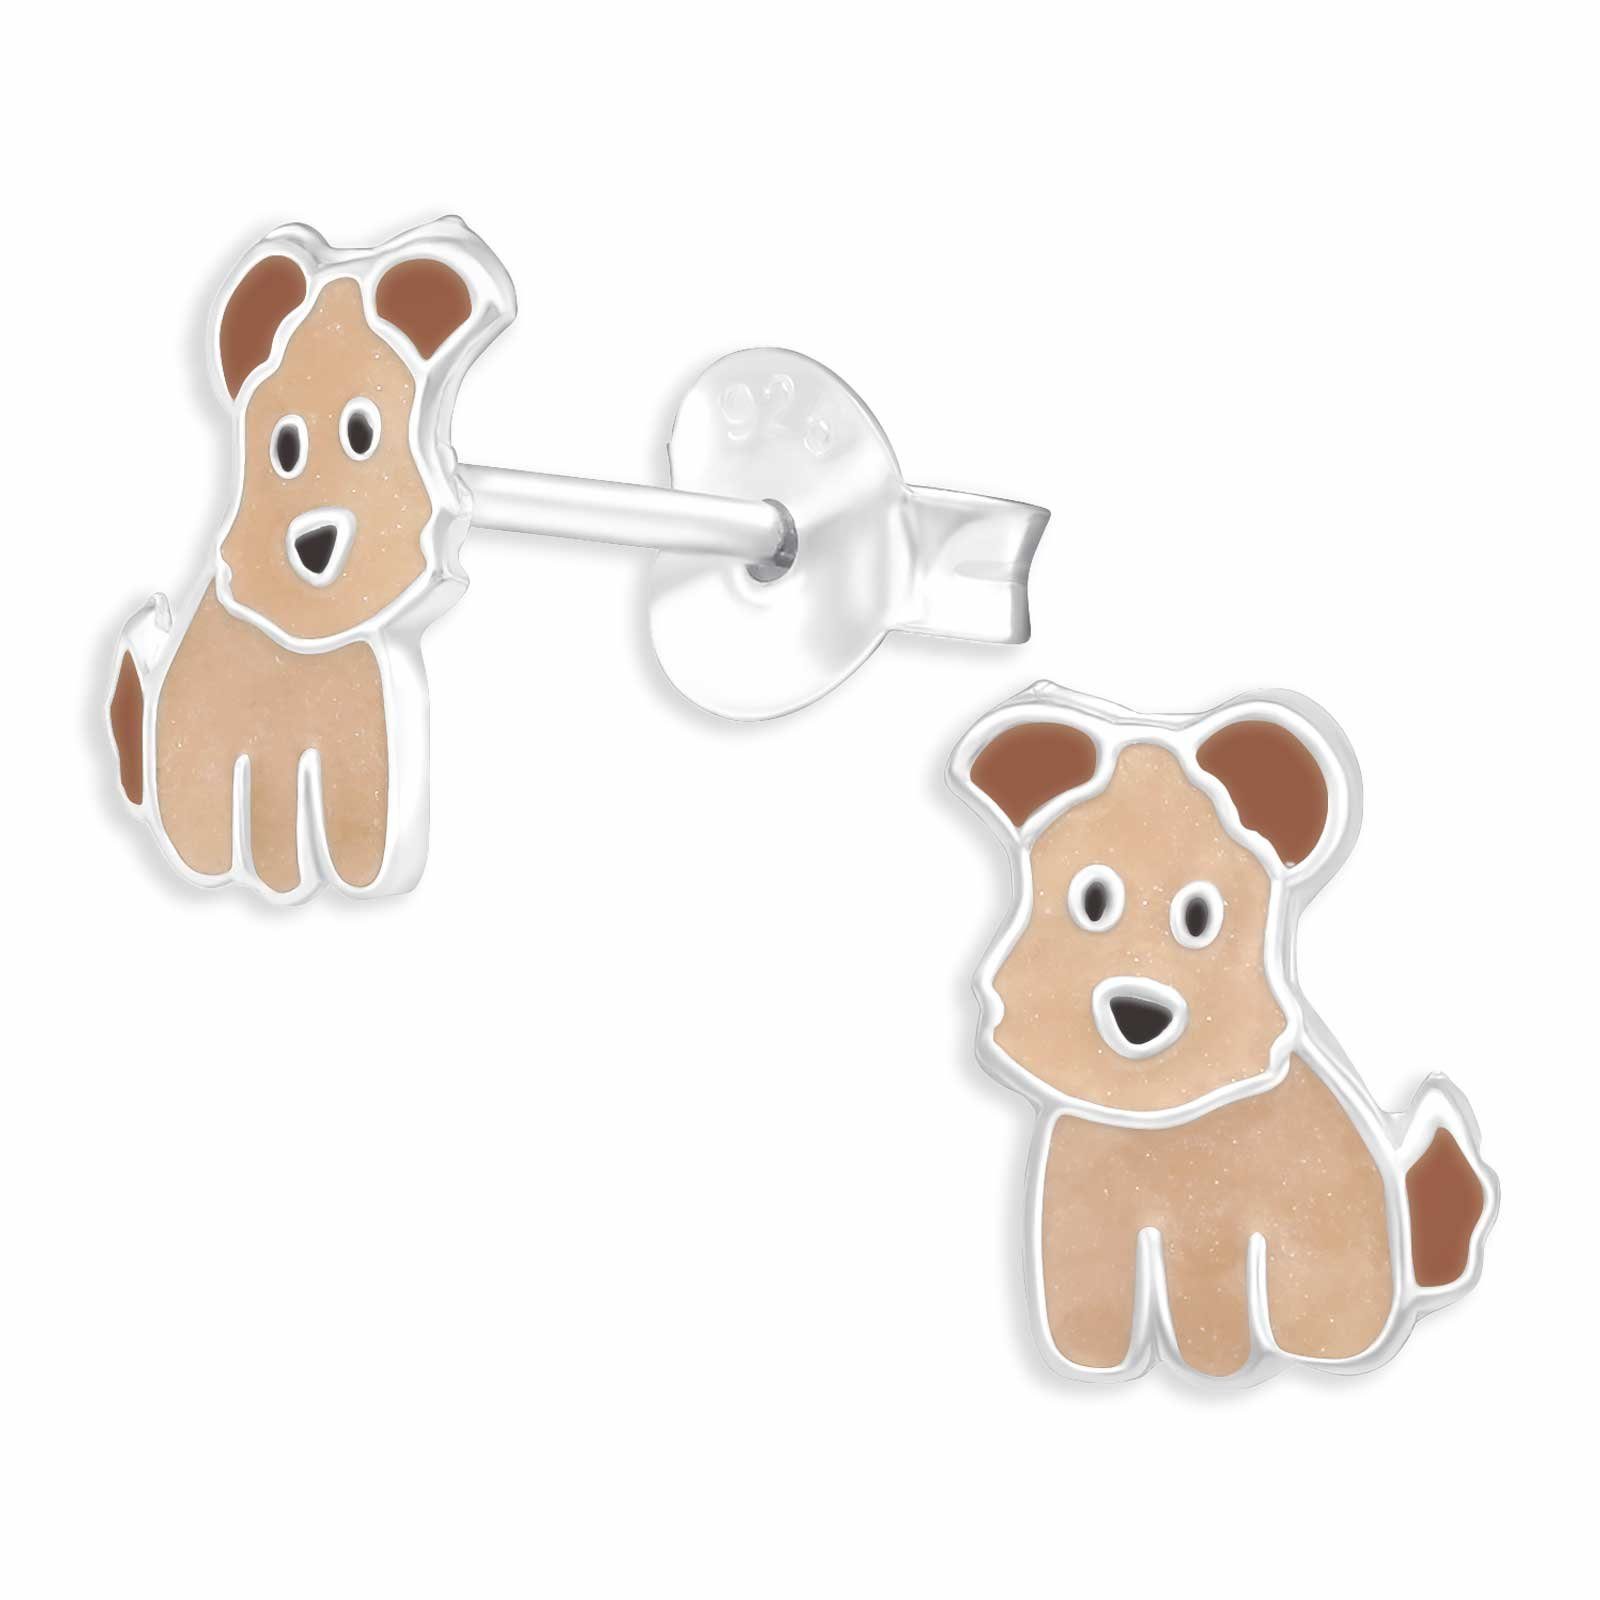 Monkimau Paar Ohrstecker Terrier Ohrstecker Hunde Silber (Packung) Ohrringe Schmuck